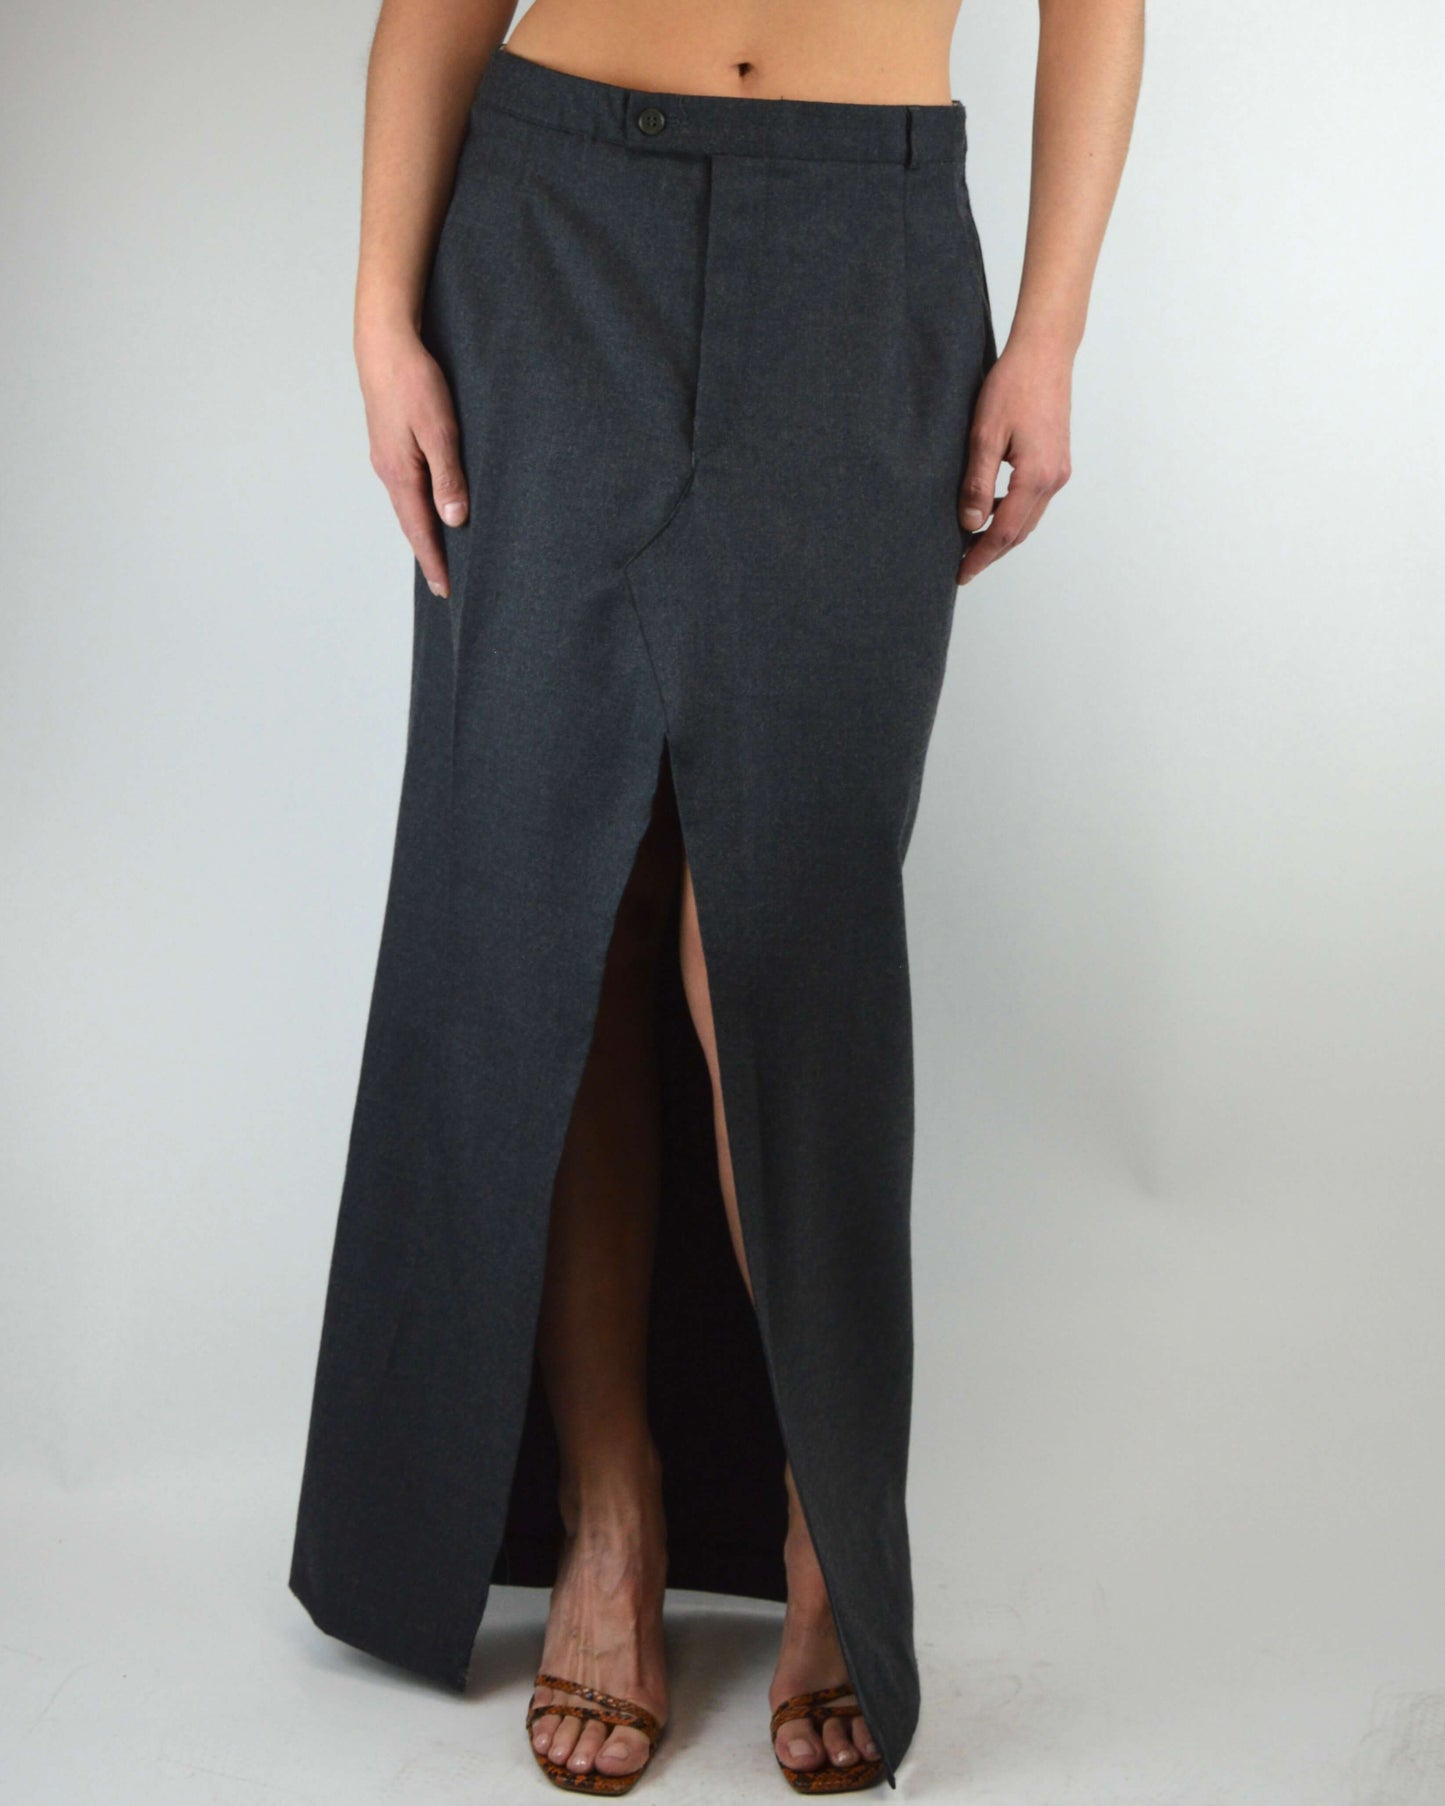 Long Skirt - Grey Softer Texture (M/L)